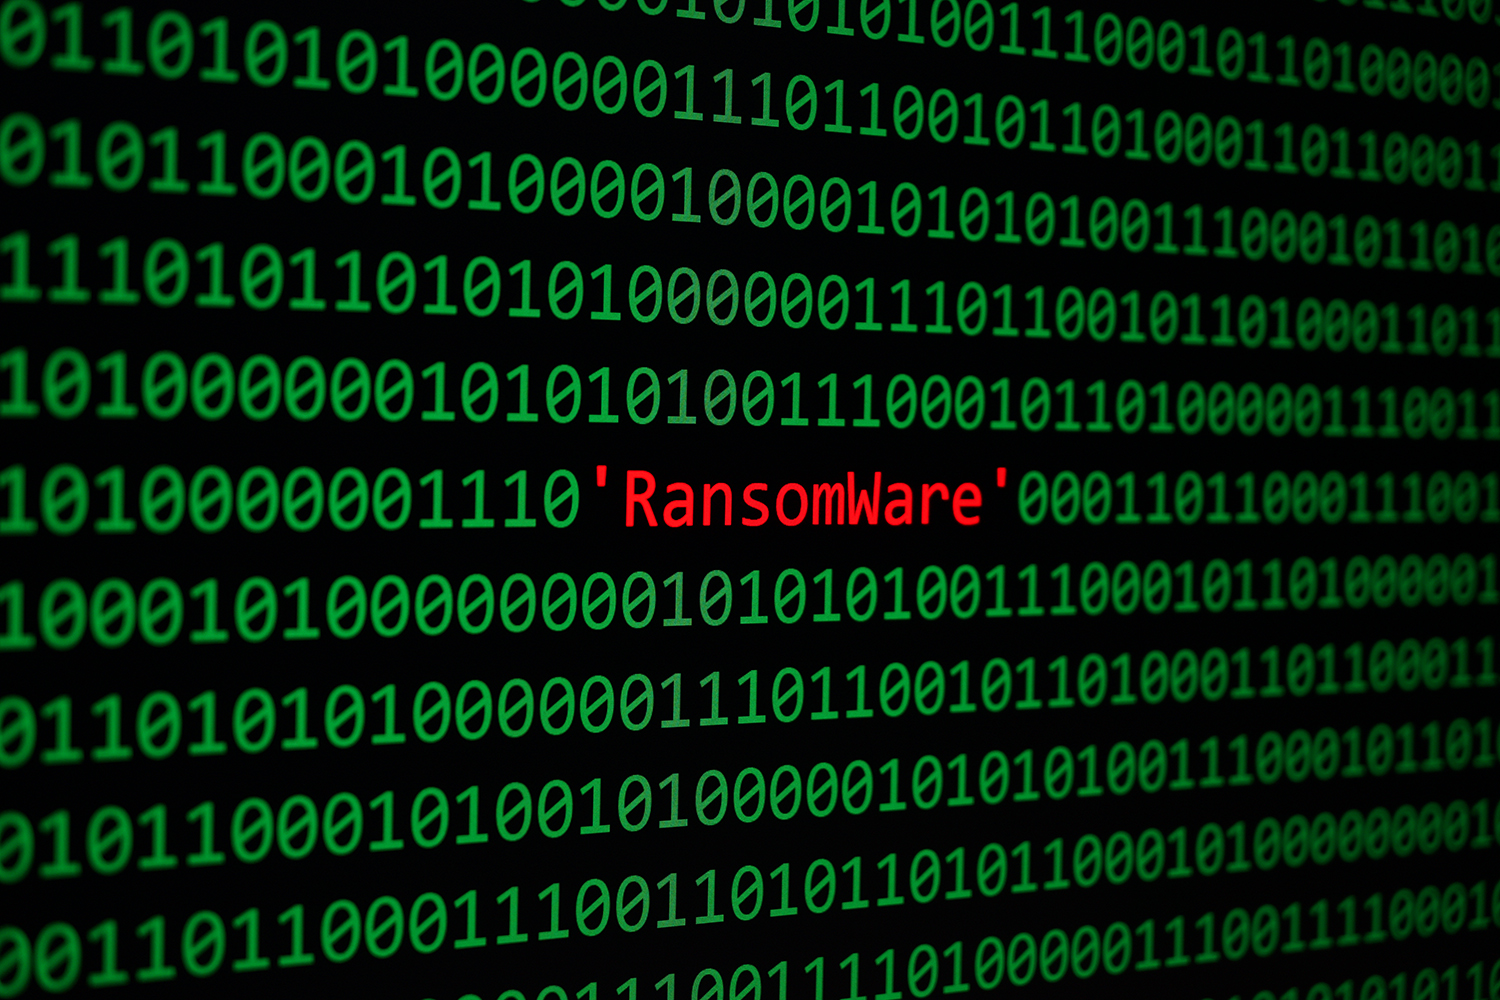 representación de ransomware